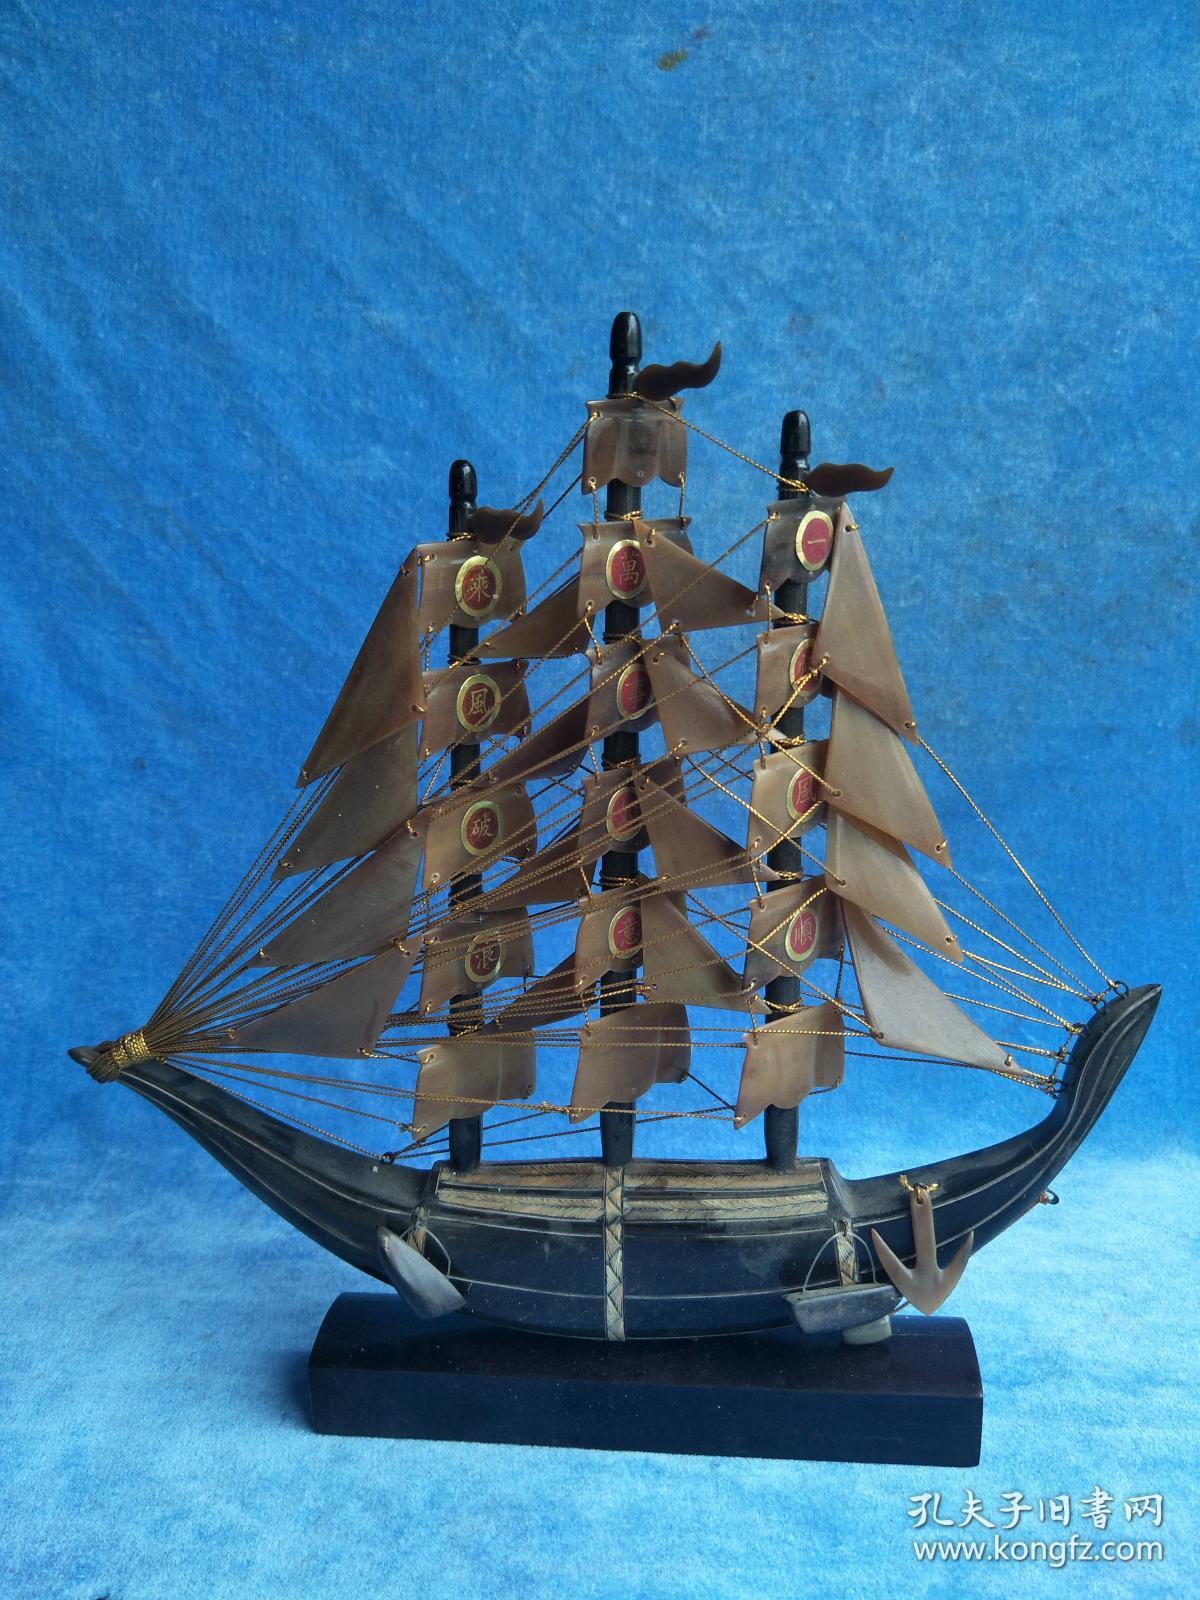 创汇时期,手工牛角大帆船摆件,纹理细密可见,如